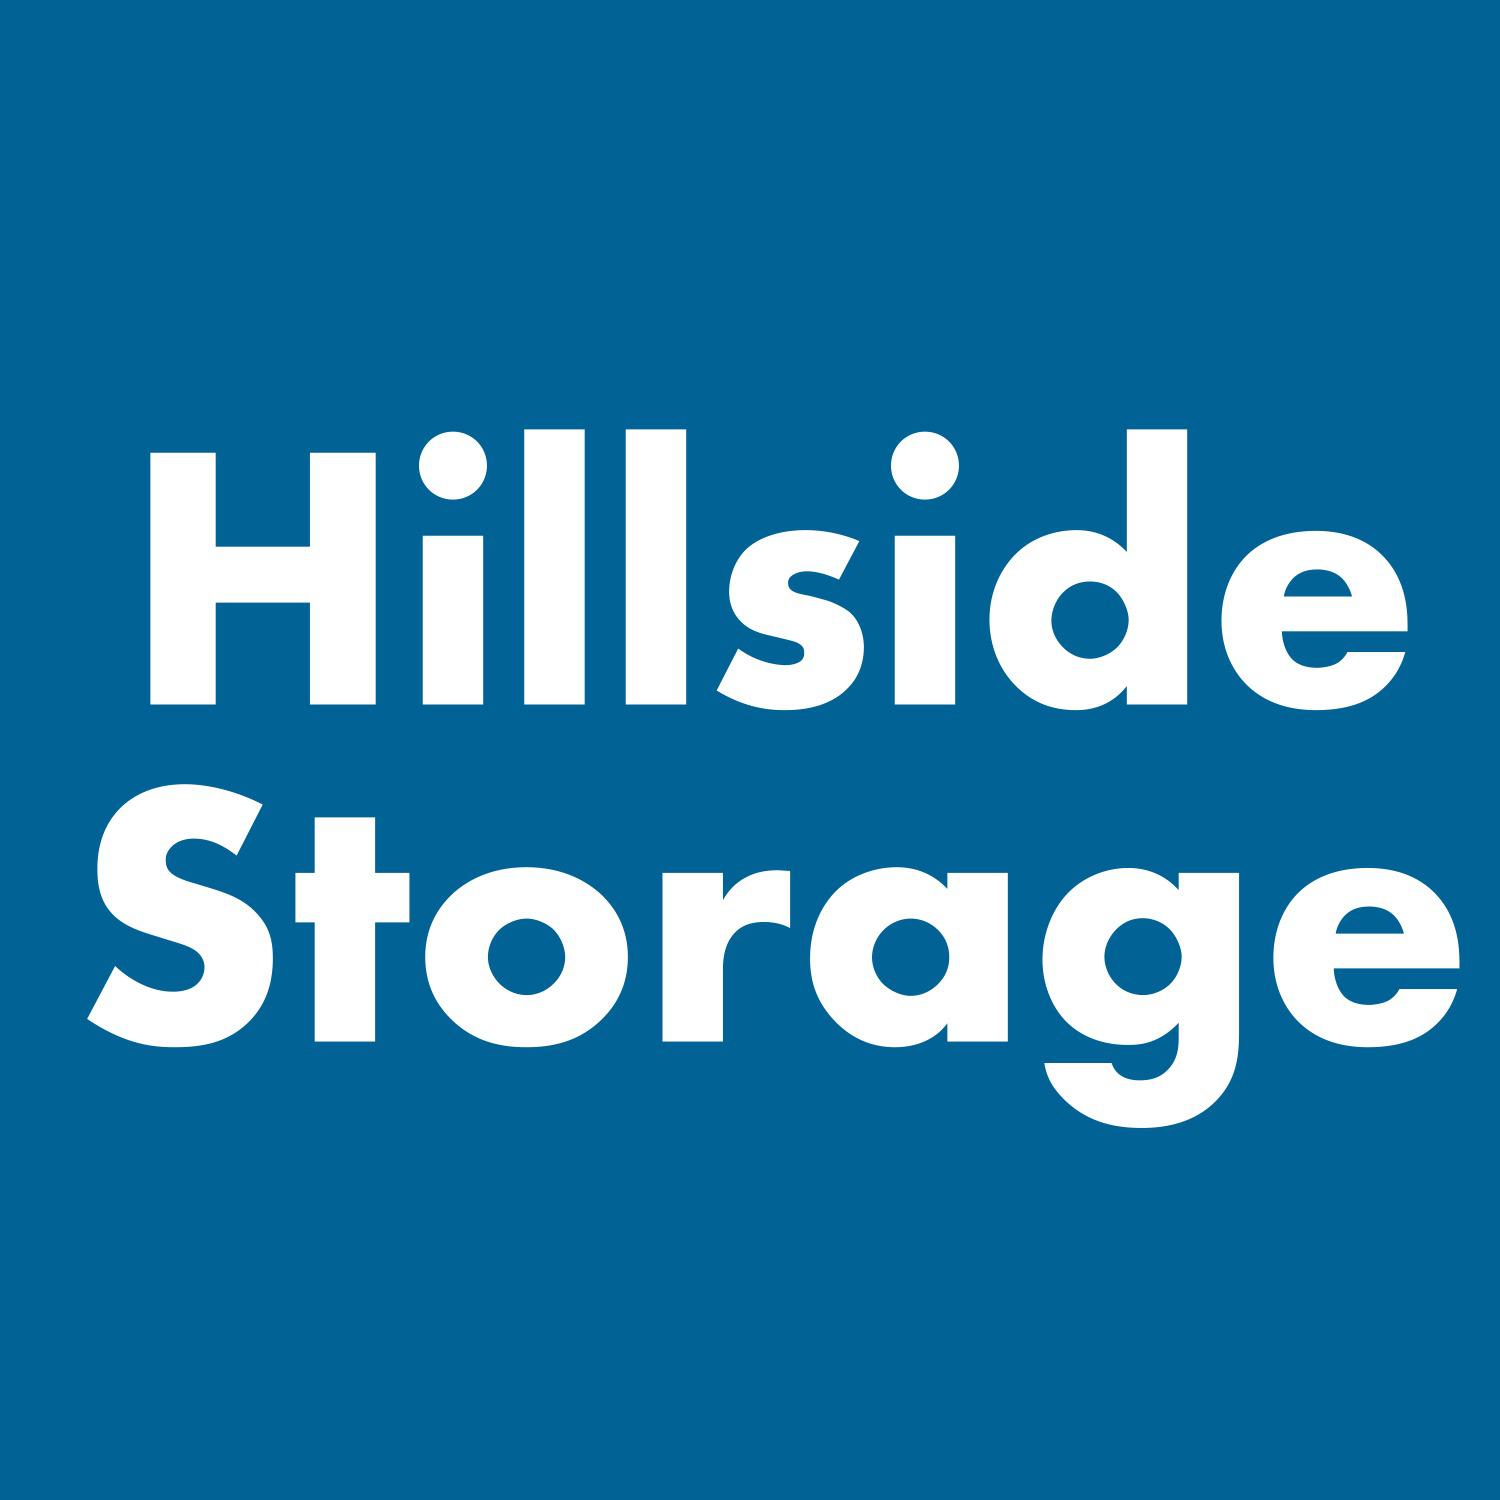 Hillside Storage